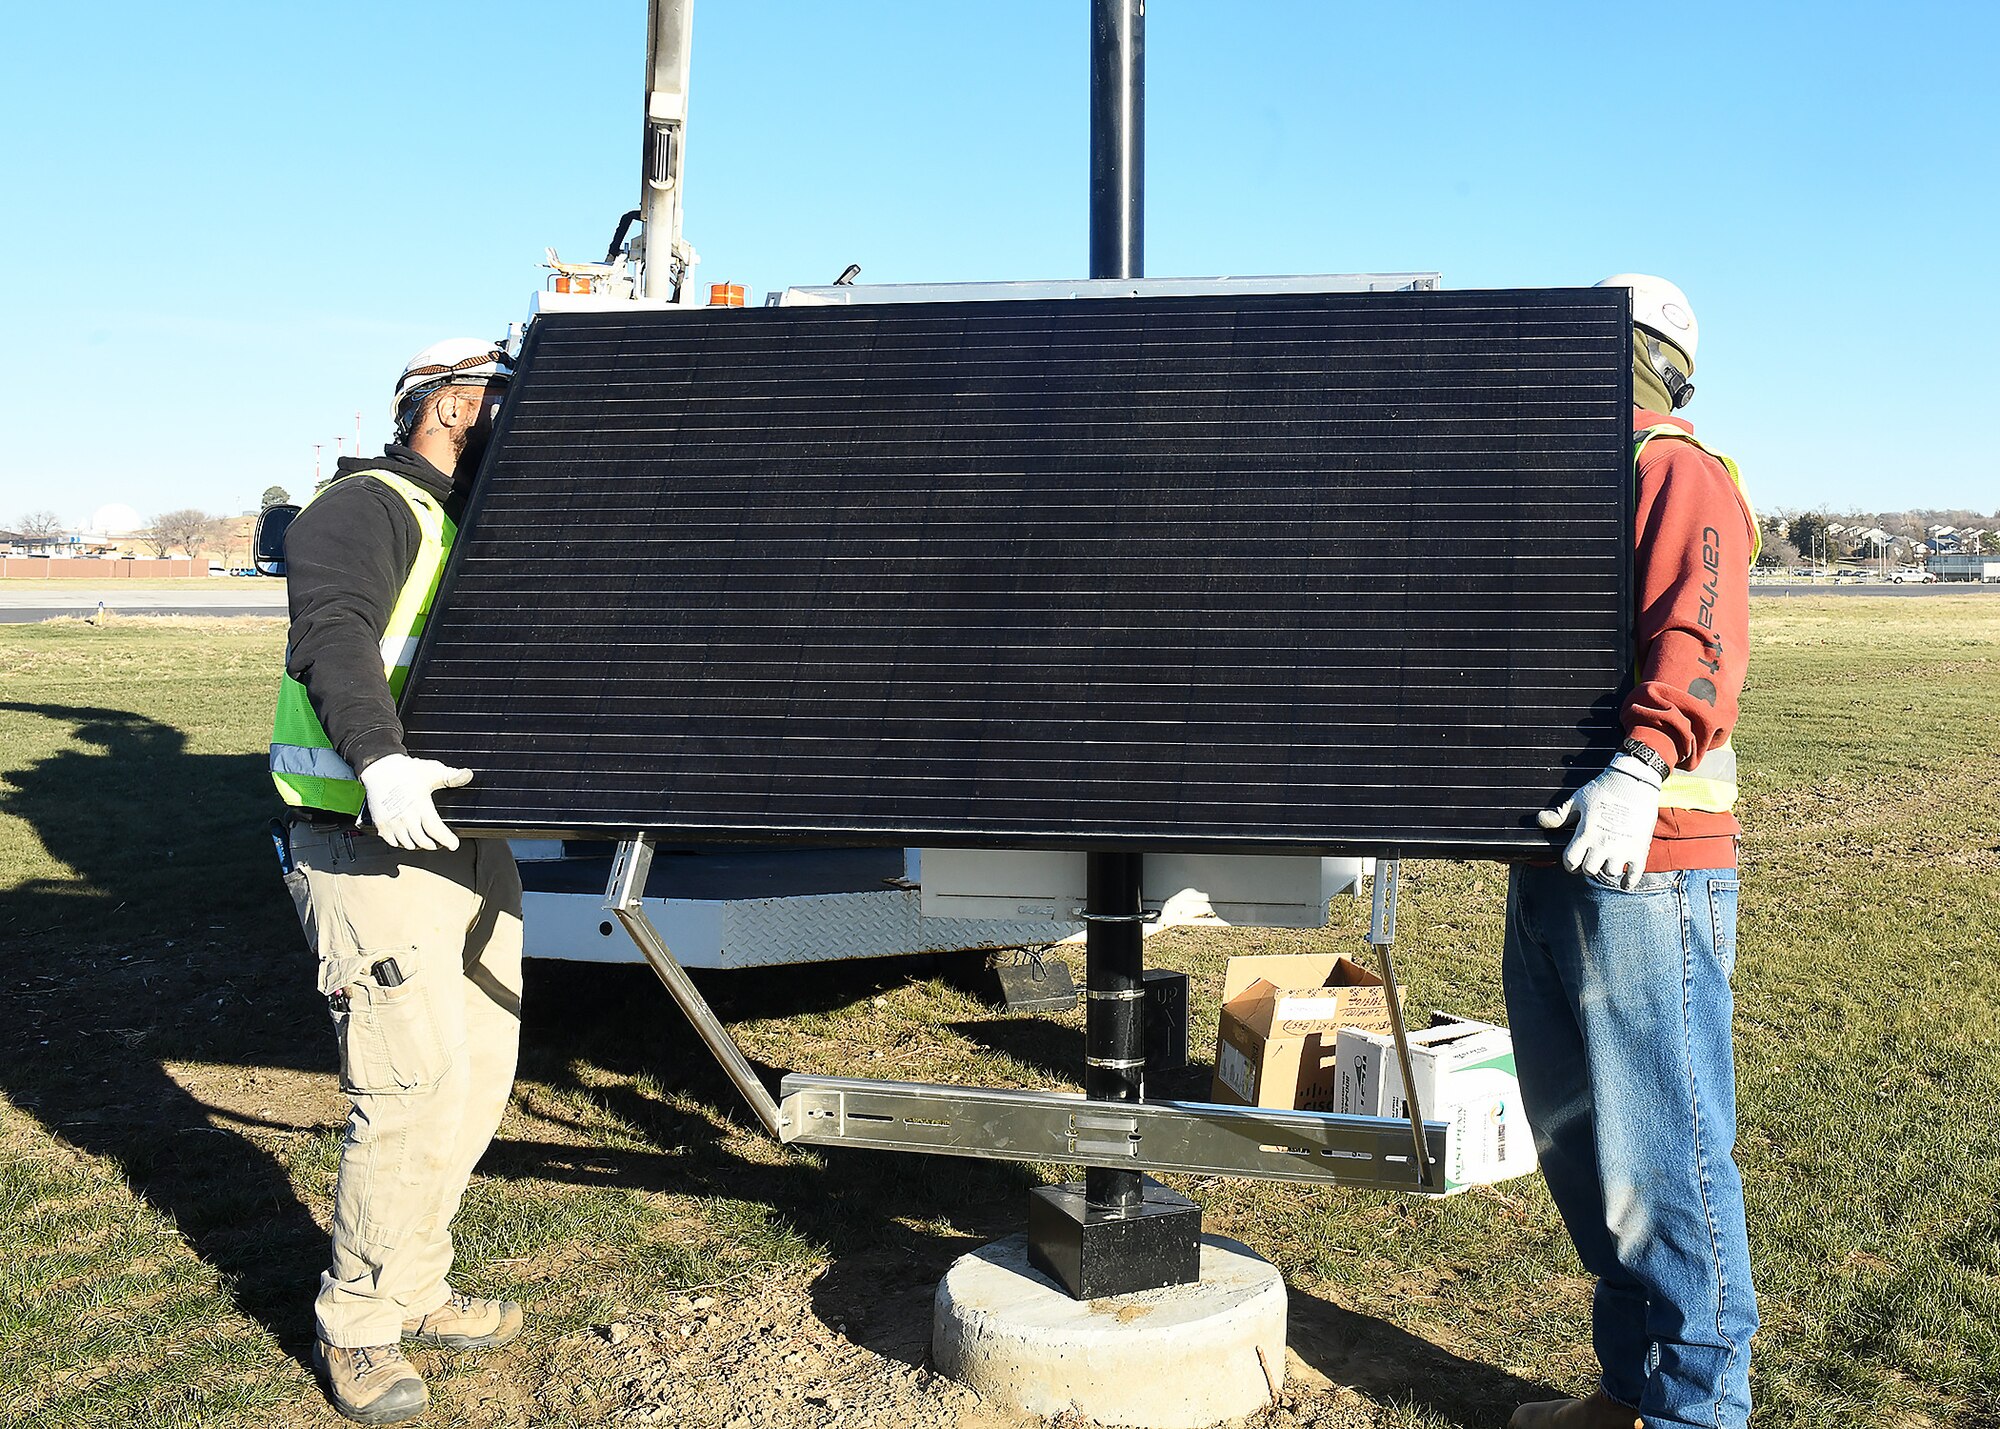 Men install a solar panel